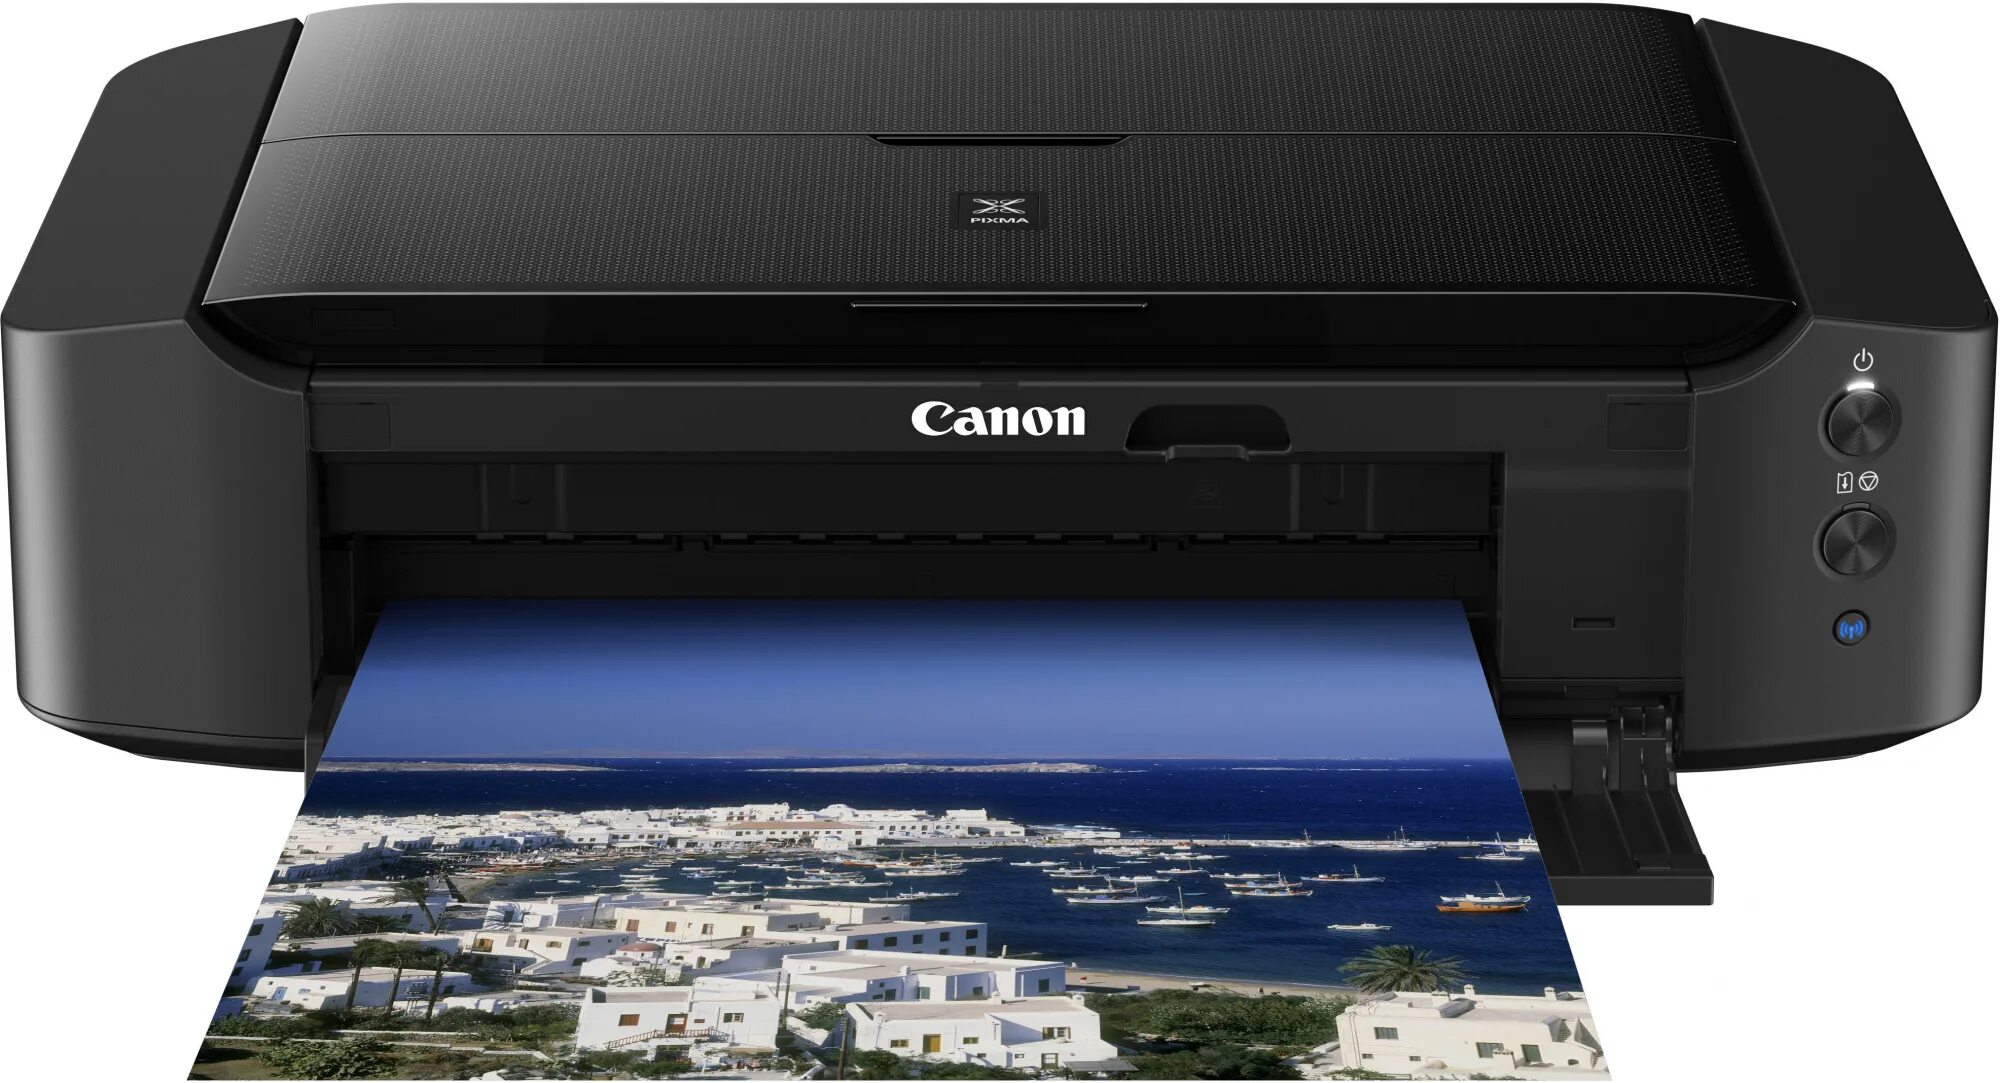 Лазерный принтер максимальное разрешение. Принтер струйный цветной Canon PIXMA. Canon PIXMA 8740. Принтер струйный Кэнон пиксма 8740. Принтер Кэнон пиксма цветной струйный.